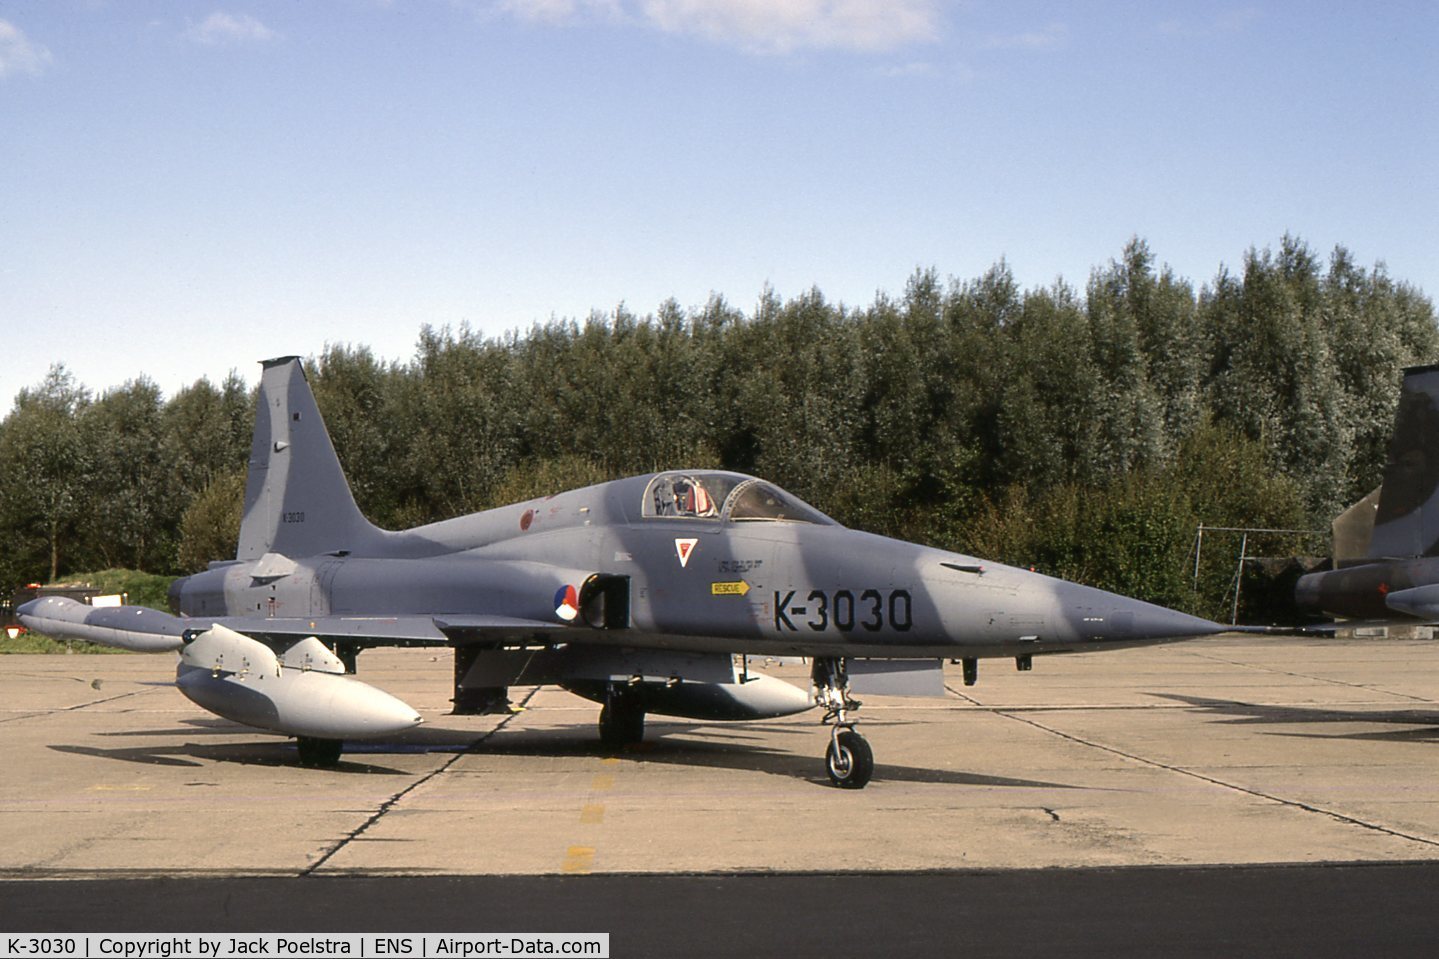 K-3030, 1970 Canadair NF-5A Freedom Fighter C/N 3030, K-3030 of 313 Sqdn at Twente AFB